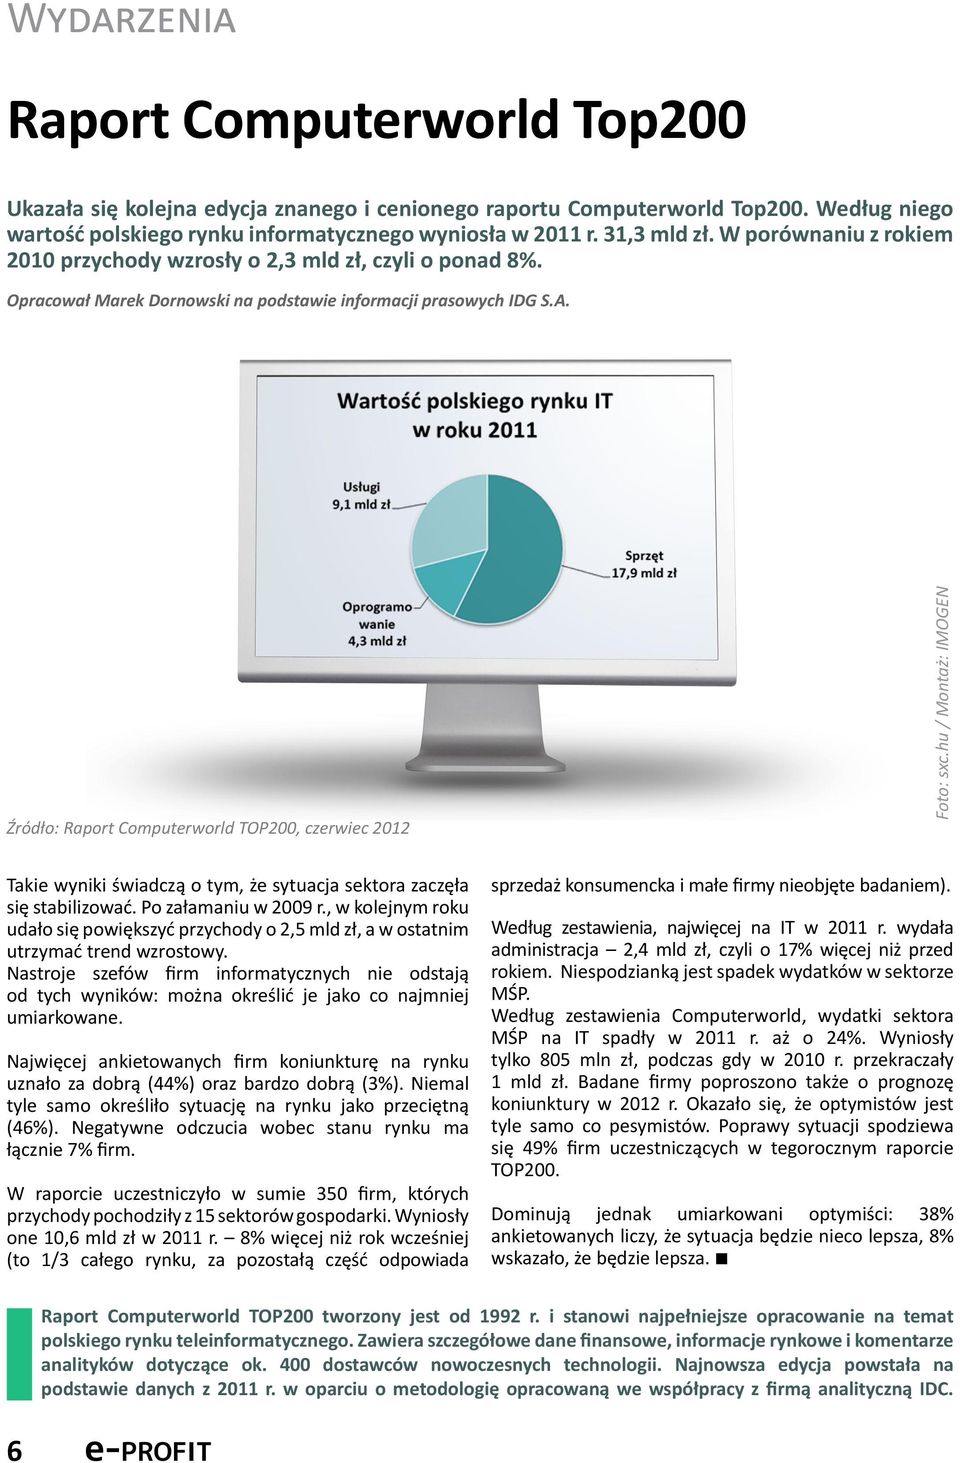 Źródło: Raport Computerworld TOP200, czerwiec 2012 Foto: sxc.hu / Montaż: IMOGEN Takie wyniki świadczą o tym, że sytuacja sektora zaczęła się stabilizować. Po załamaniu w 2009 r.